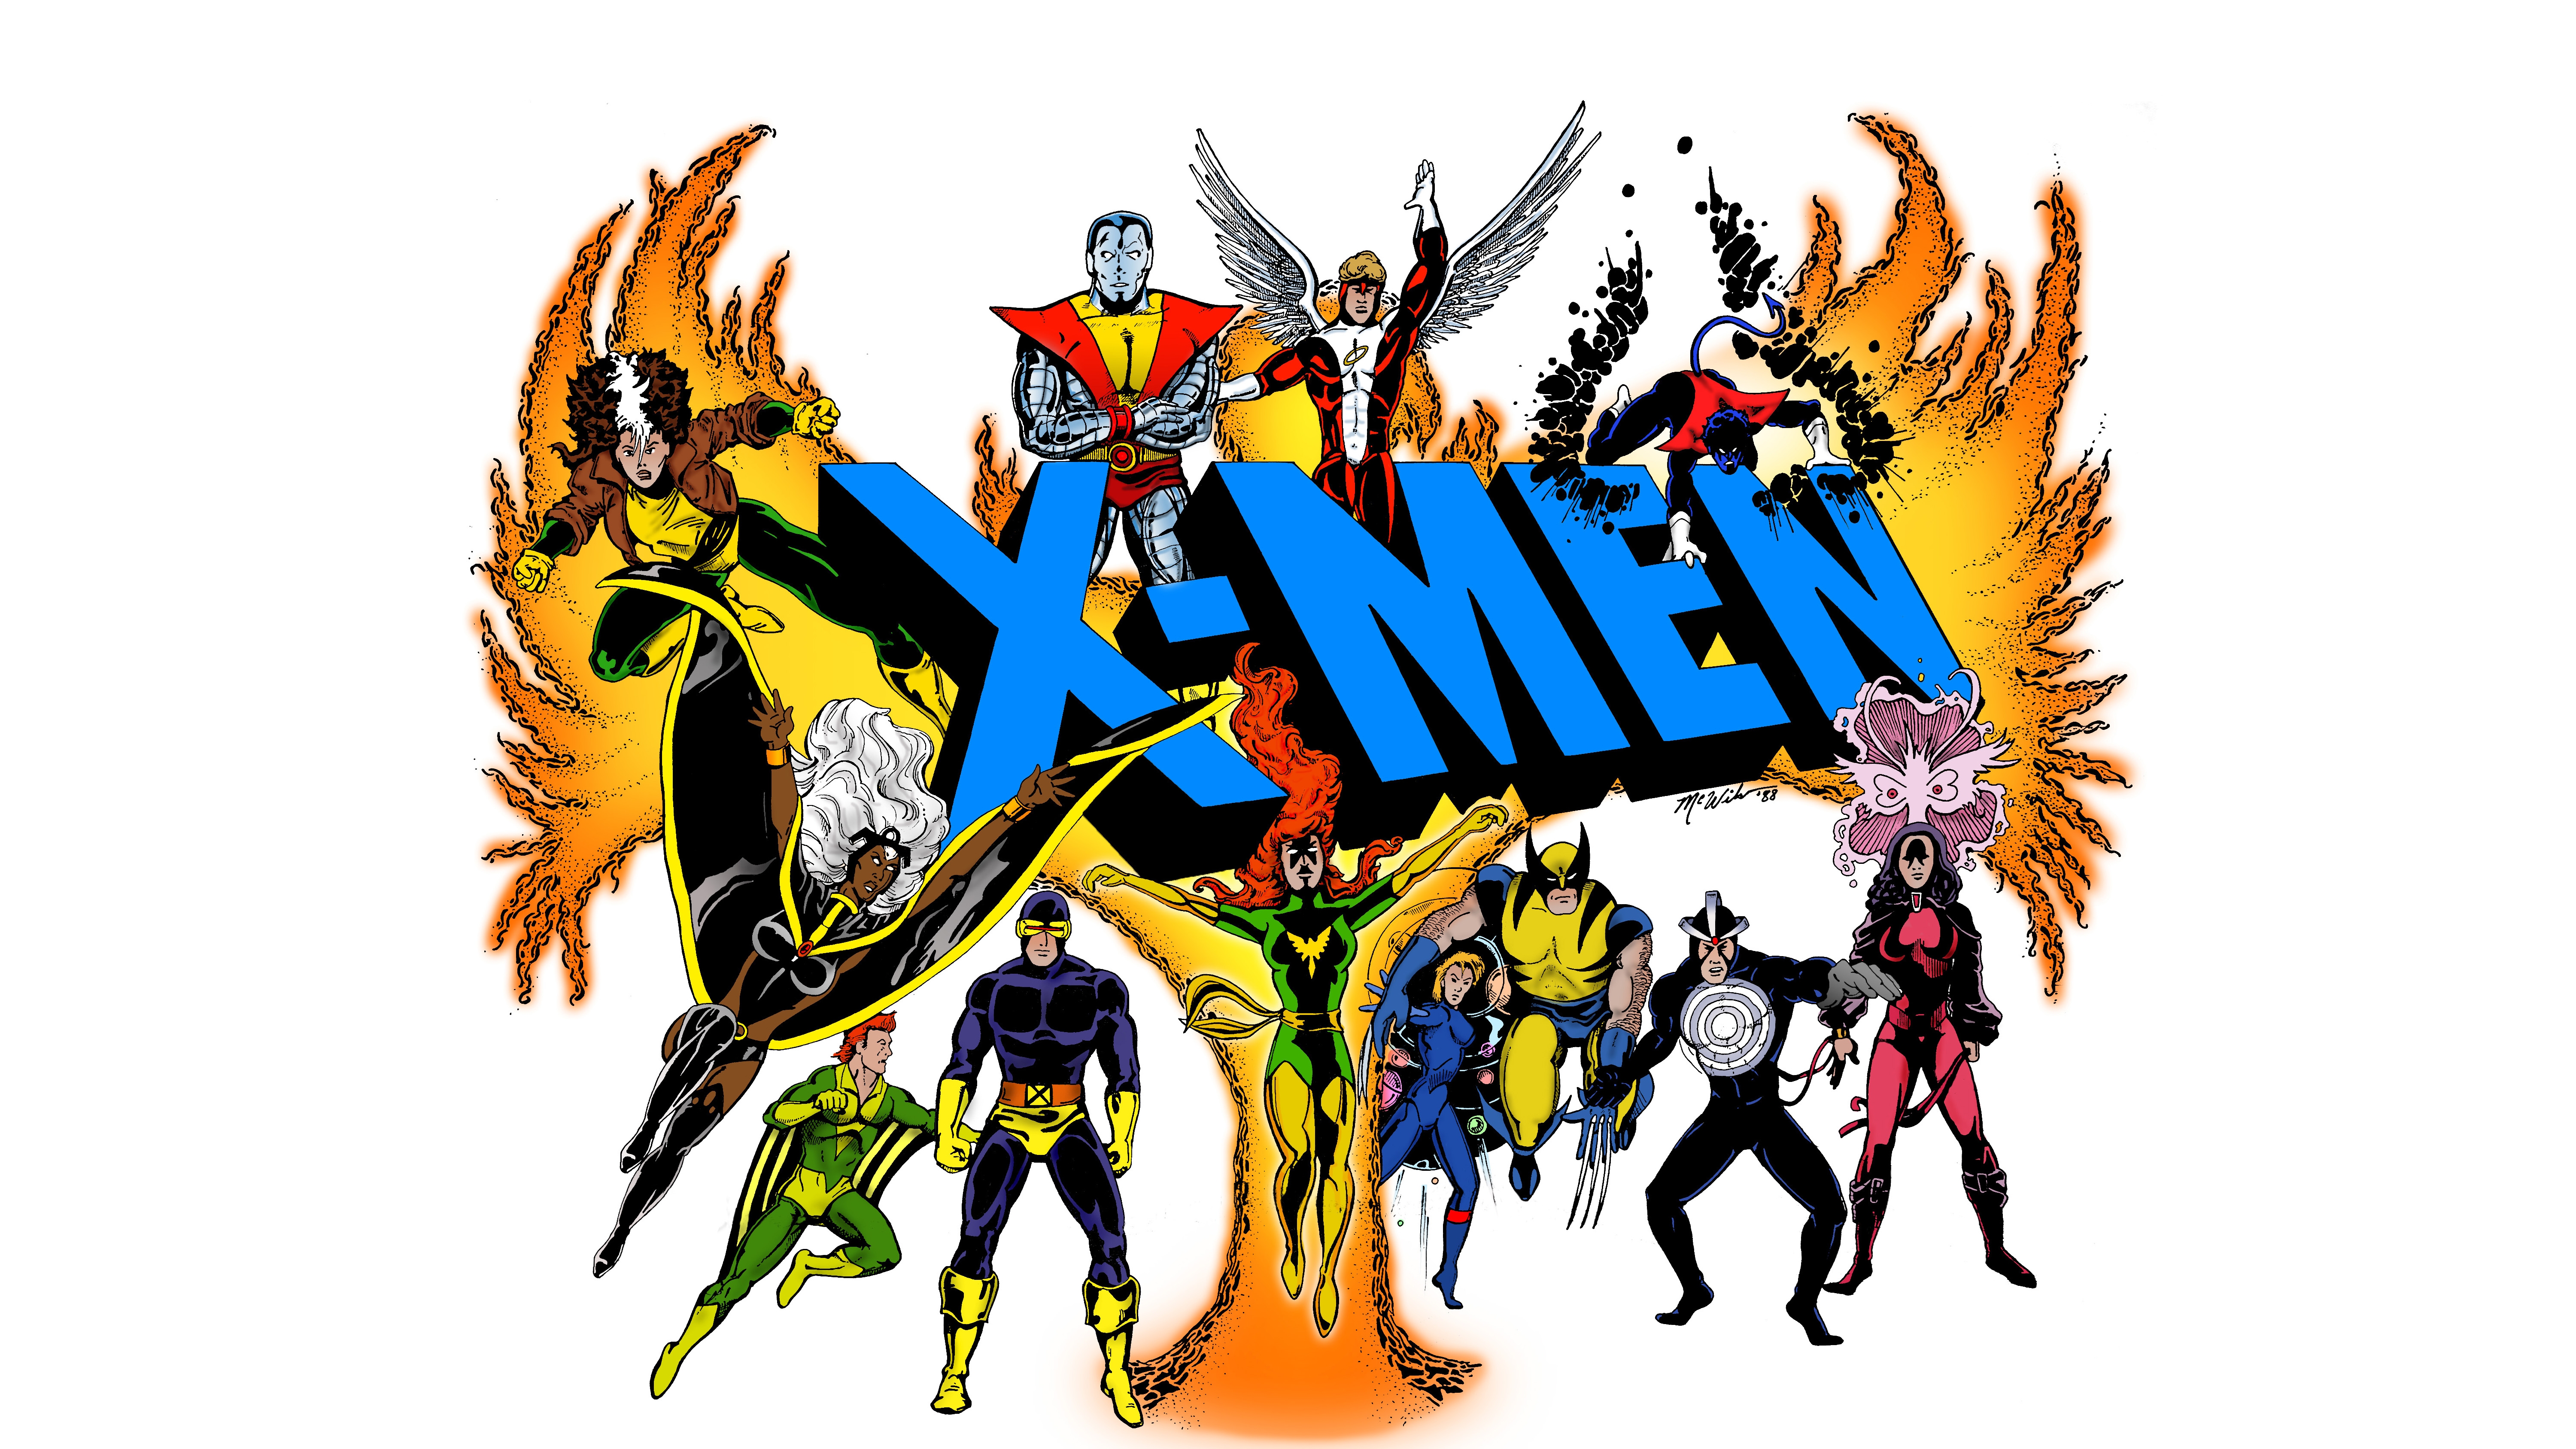 X-Men Computer Wallpapers, Desktop Backgrounds | 6000x3375 | ID:466185